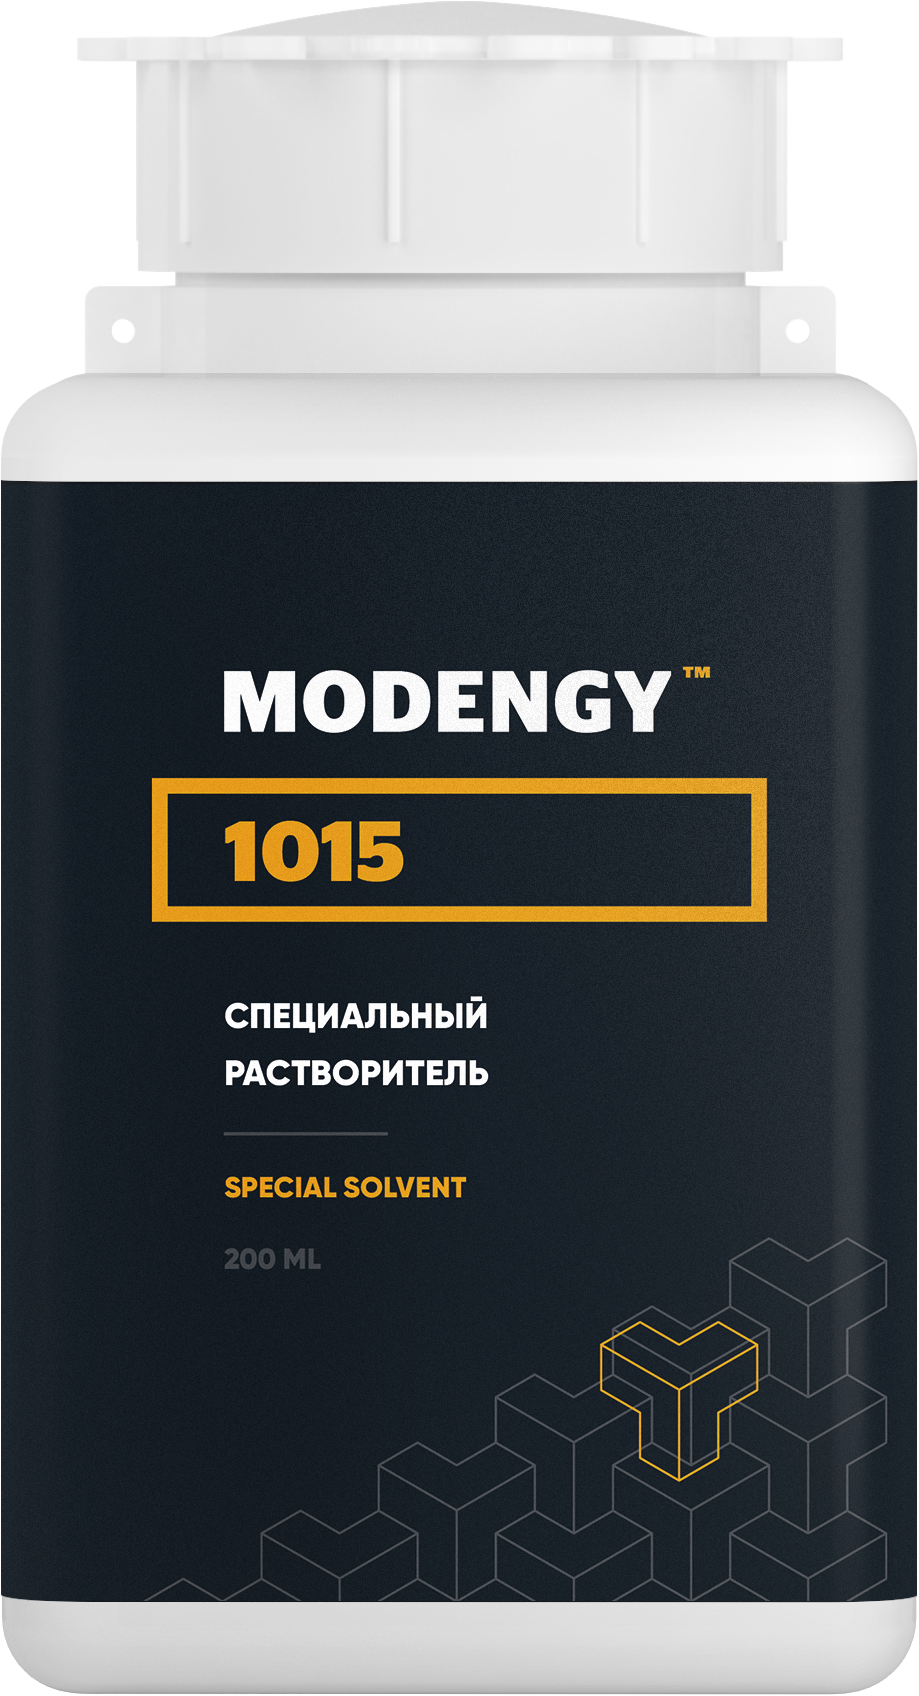 Специальный растворитель MODENGY 1015 (200 мл) специальный растворитель modengy 1015 1 л